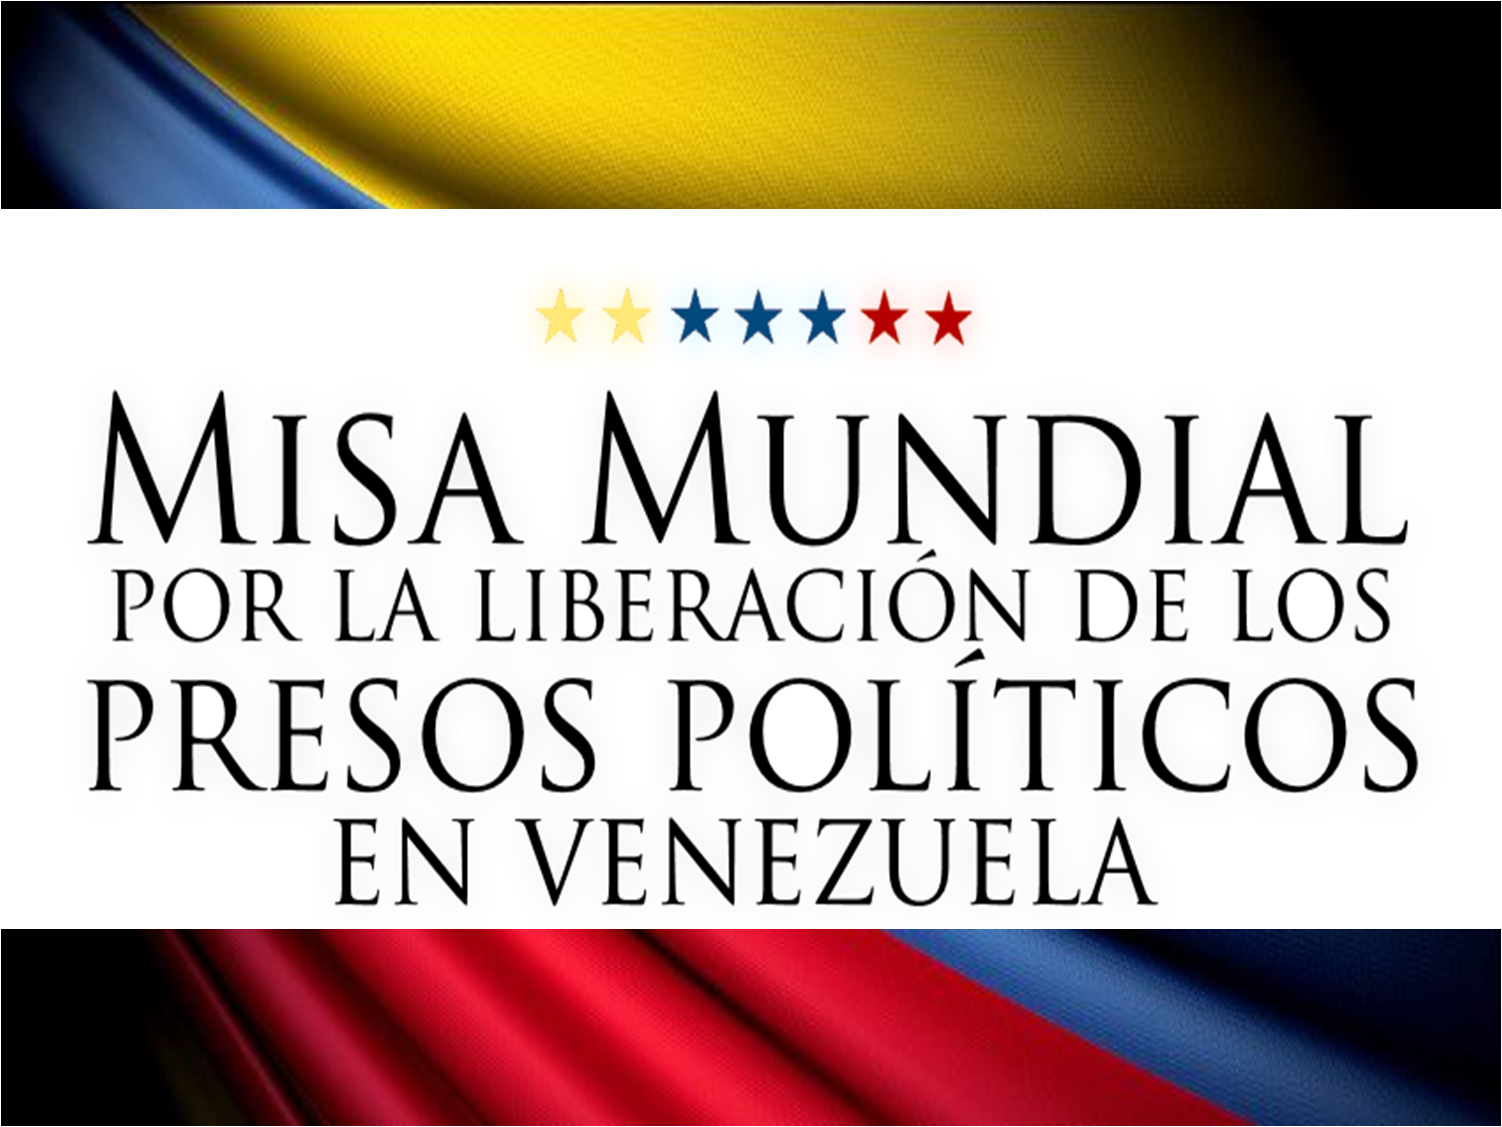 #OracionPorLosPresosPoliticos: Misa mundial por la liberación de los presos políticos en Venezuela